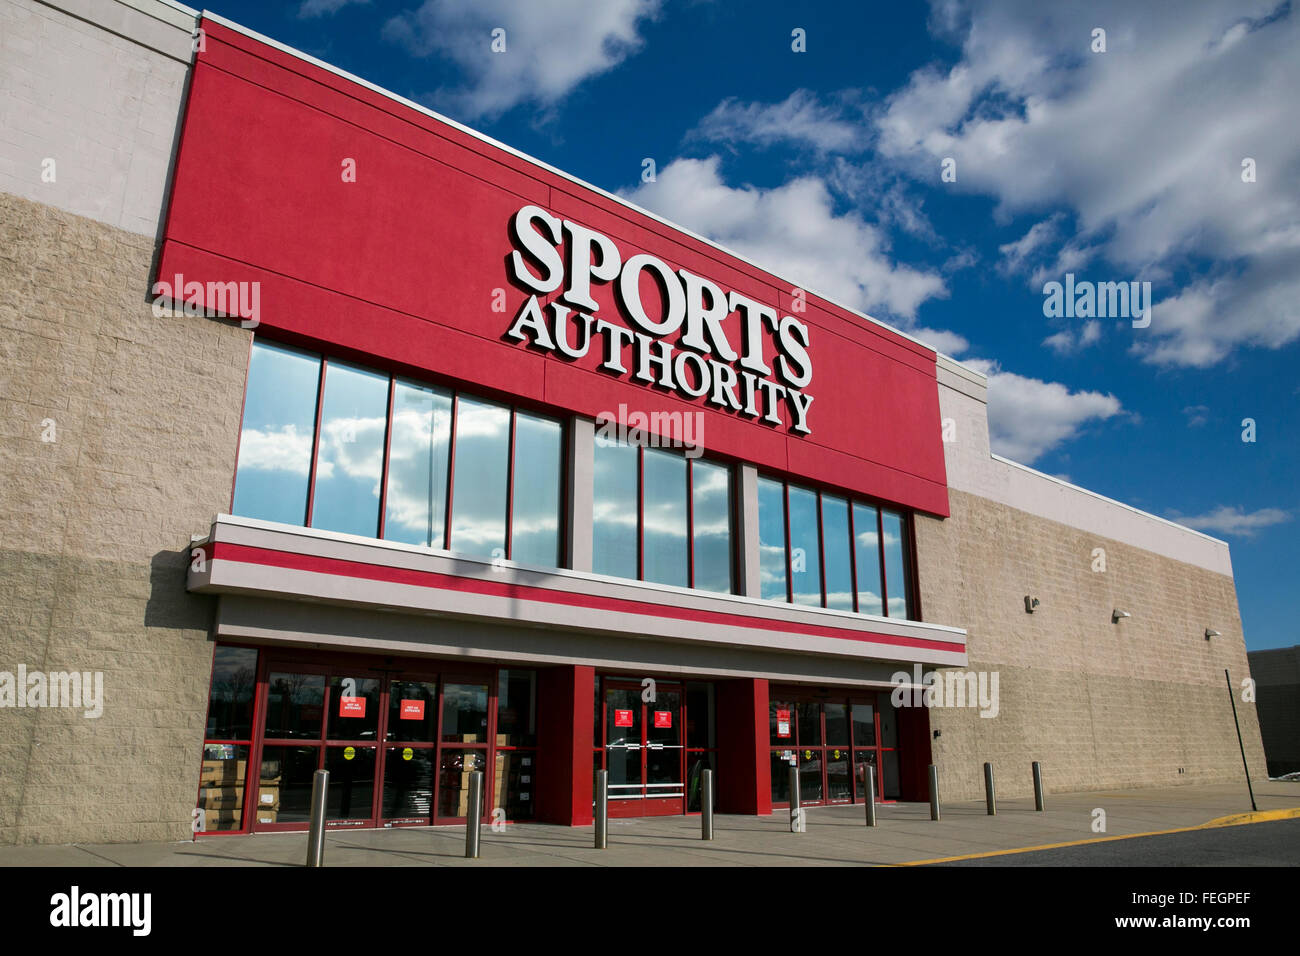 Une Autorité Sports store de Frederick, Maryland le 5 février 2016. Banque D'Images